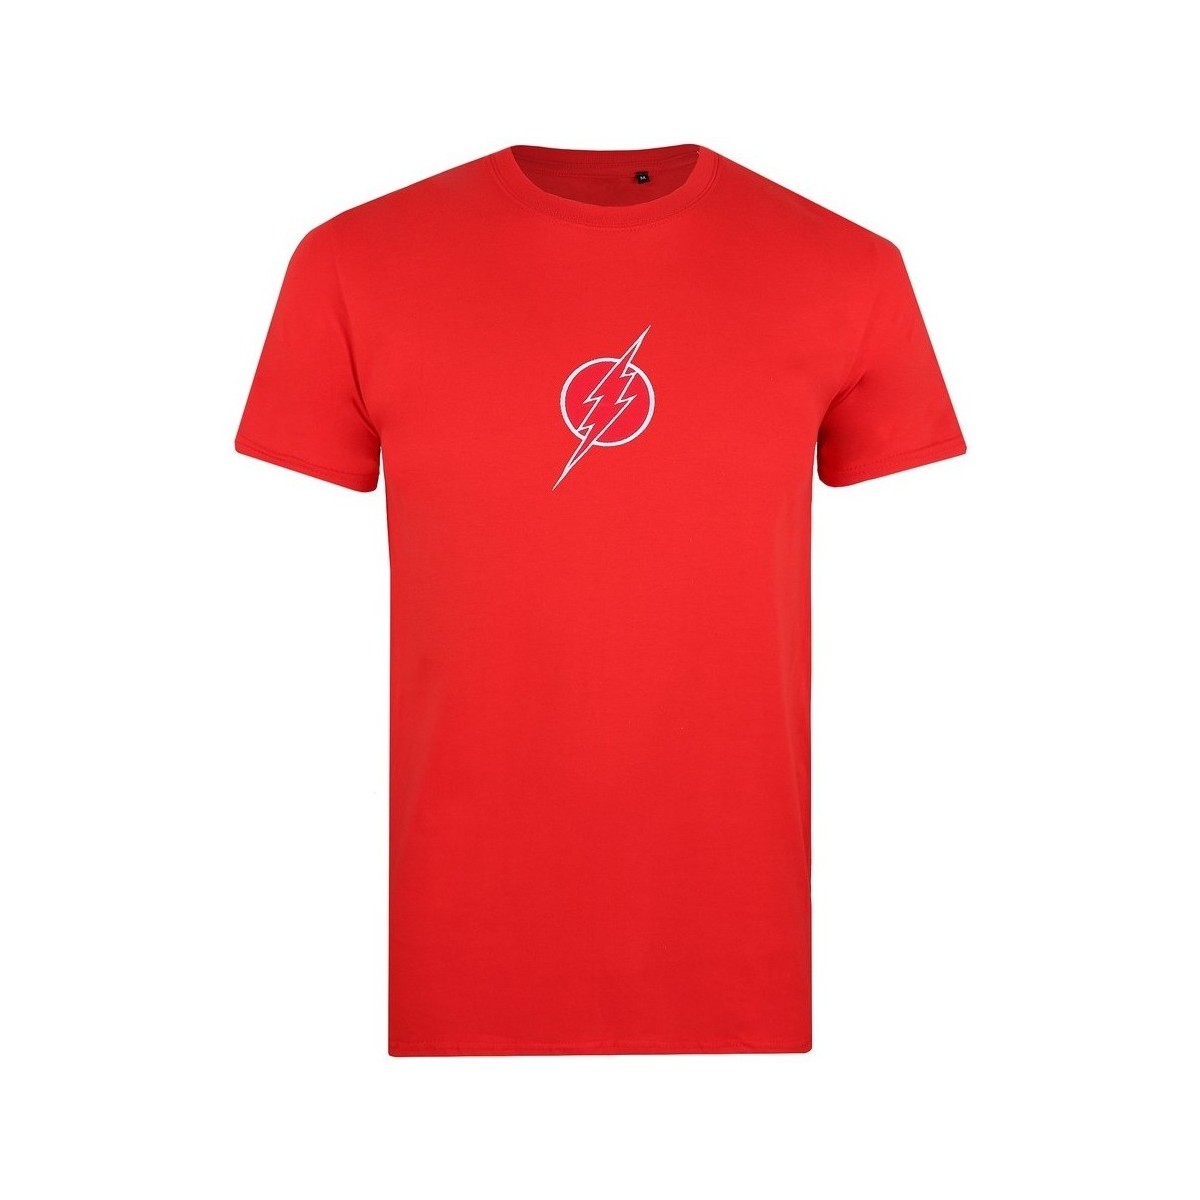 Abbigliamento Uomo T-shirts a maniche lunghe The Flash TV1221 Rosso